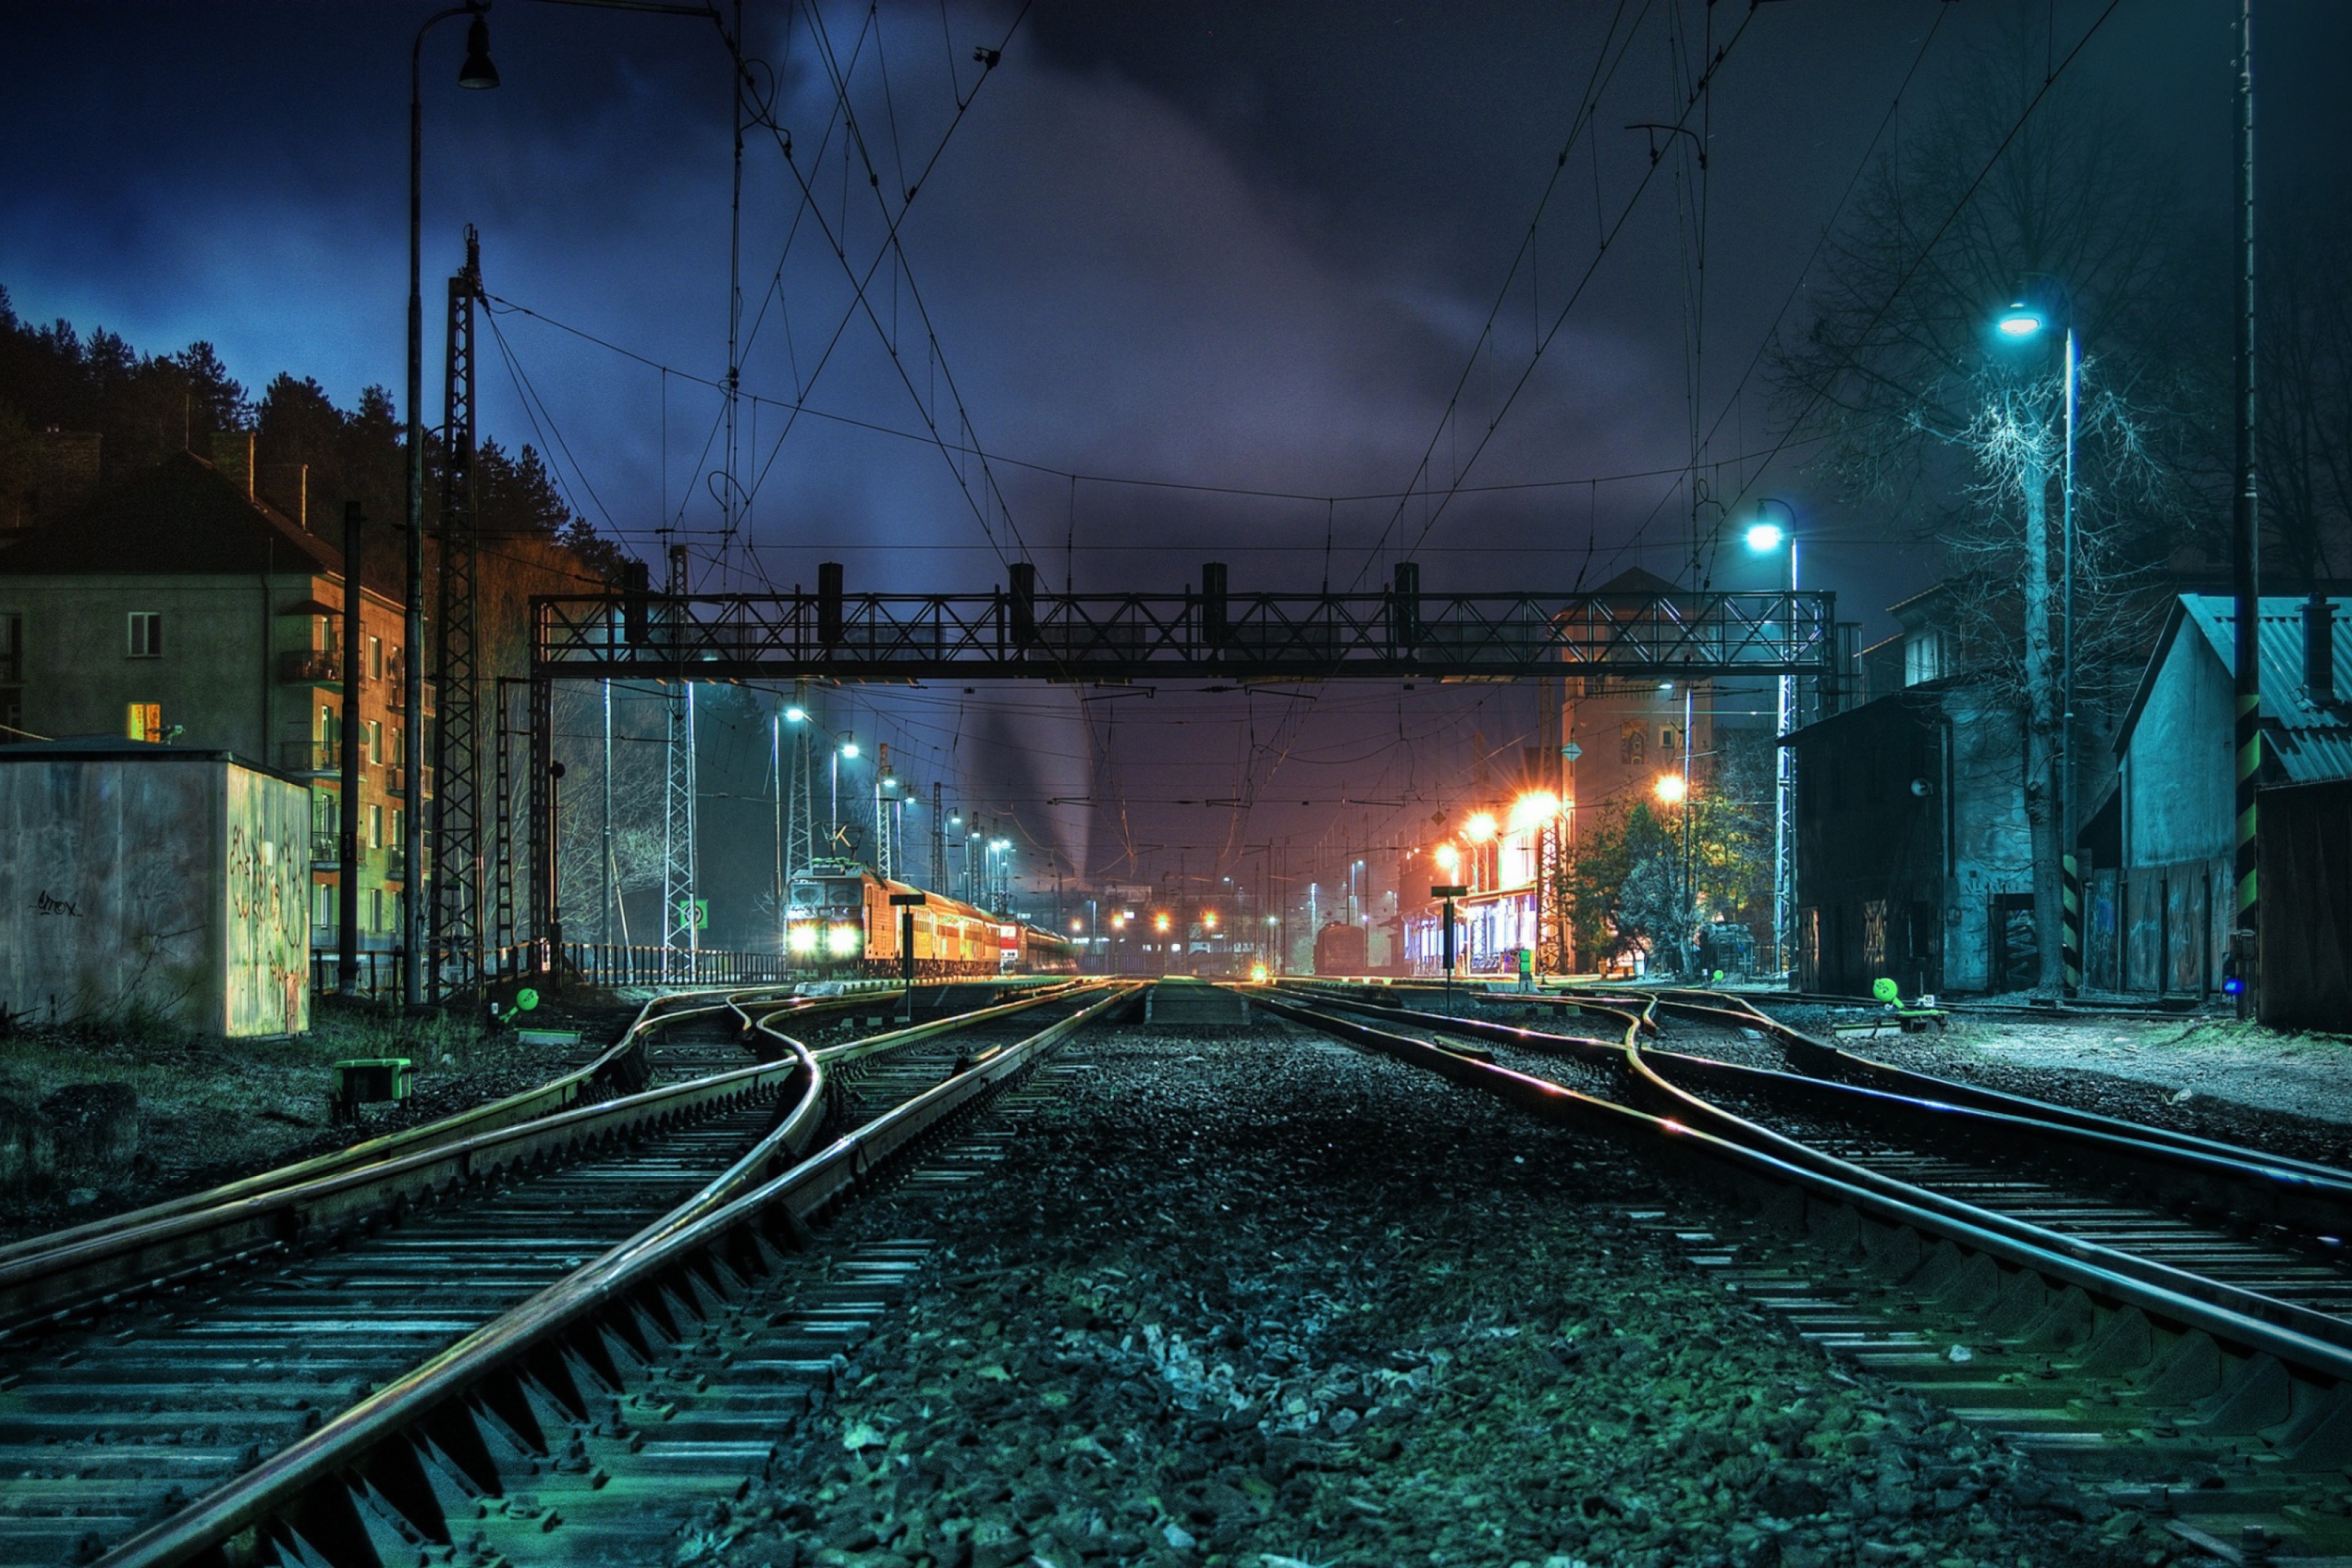 Обои Railway Station At Night 2880x1920